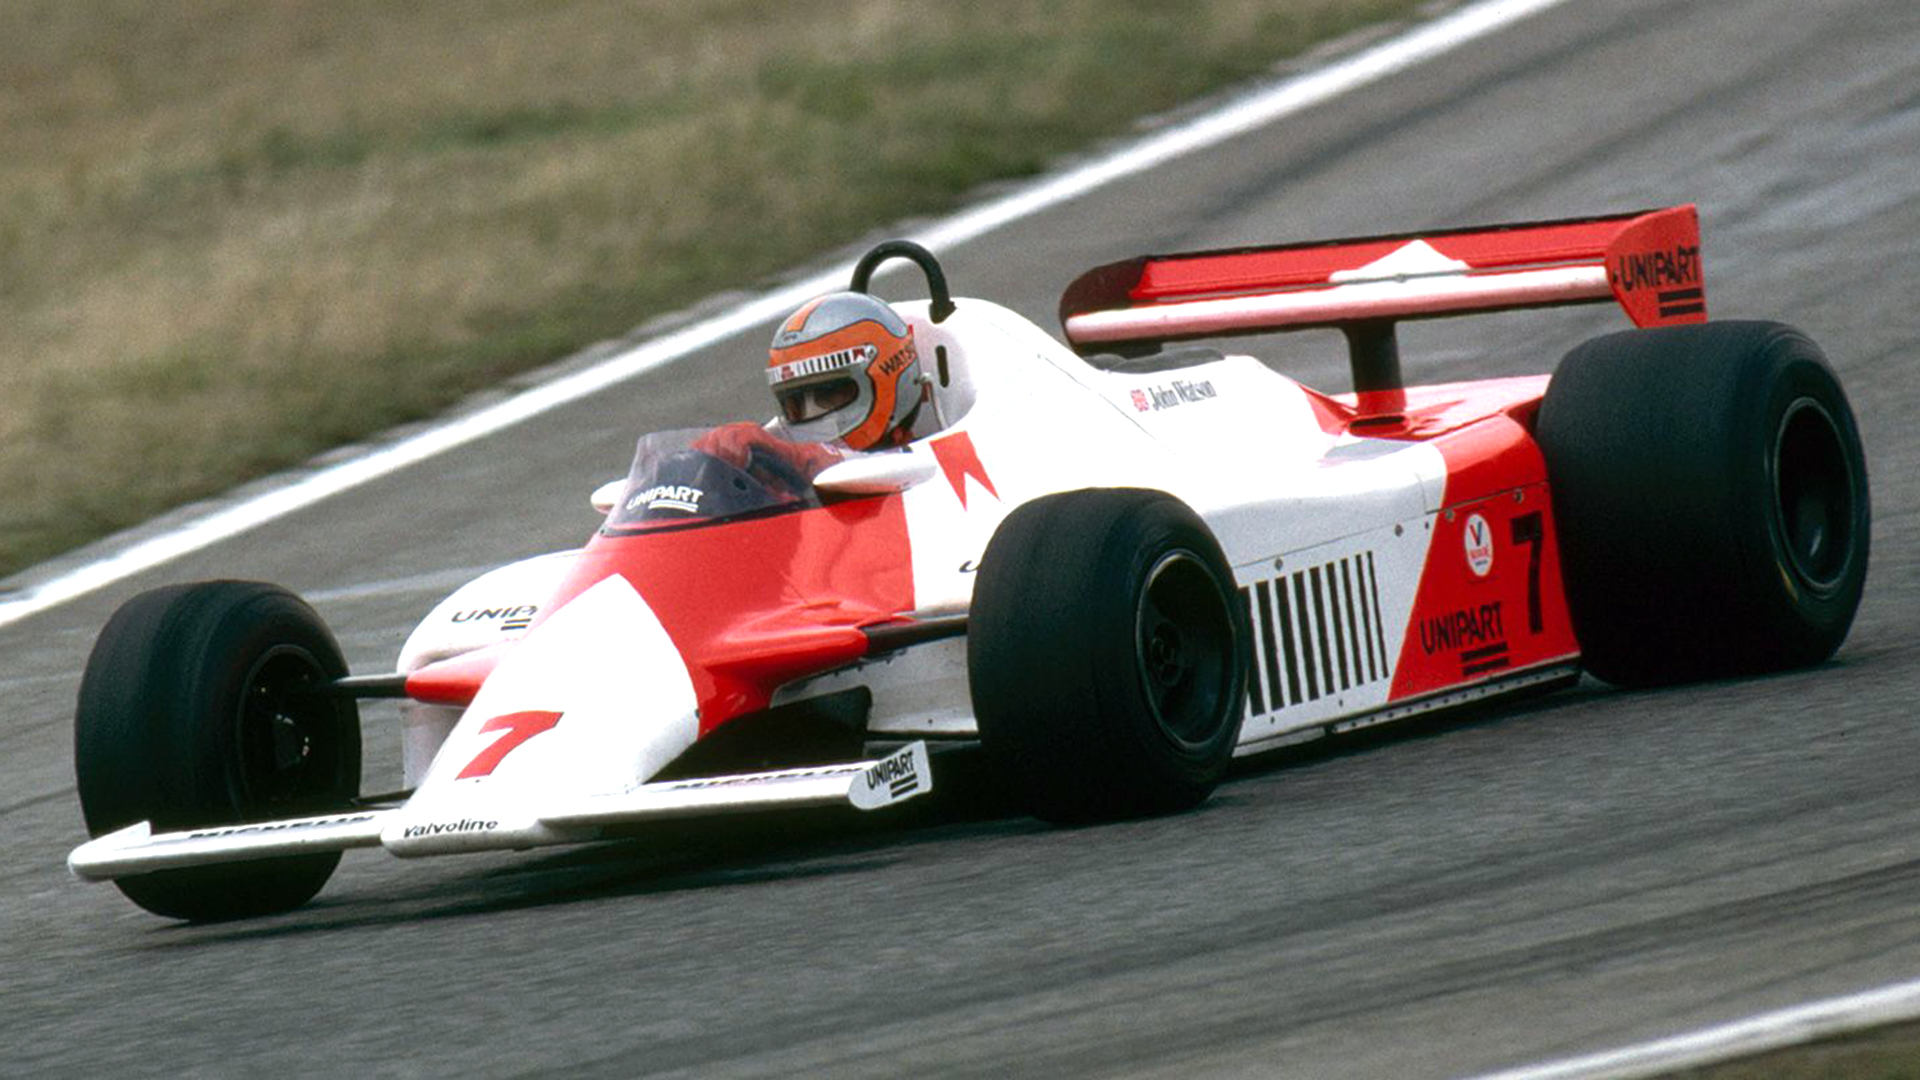 En 1981, el McLaren MP4 de John Watson fue el primer auto de Fórmula 1 cuyo monocasco era completame de fibra de carbono. Hoy, ese material compuesto se usa en todos los autos deportivos